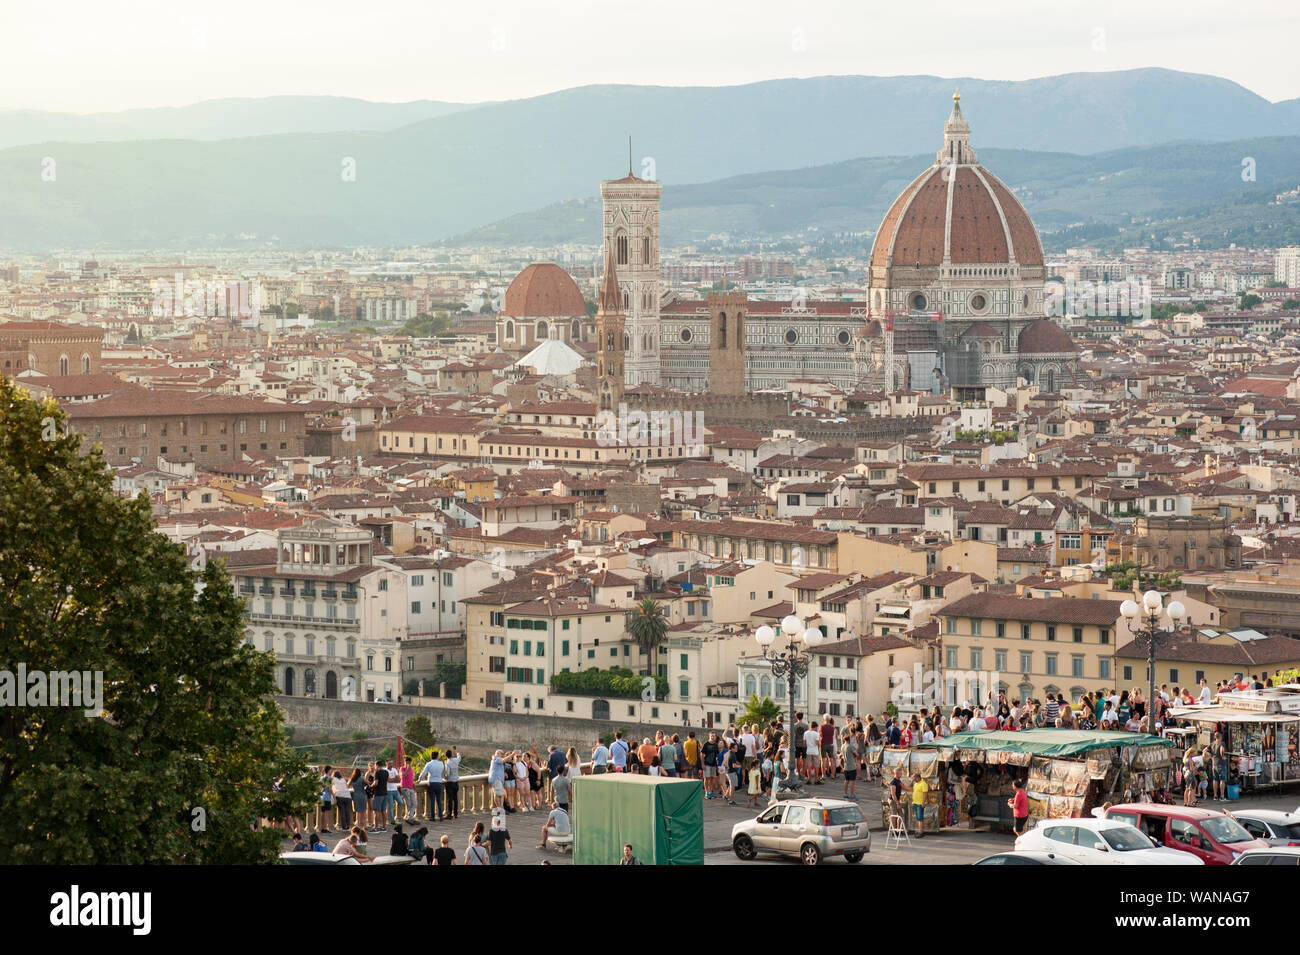 Florencia, Italia - 2019, el 16 de agosto: Piazzale Michelangelo con vistas al horizonte de la ciudad, en un día de verano, vista desde el balcón que domina toda la terraza. Foto de stock